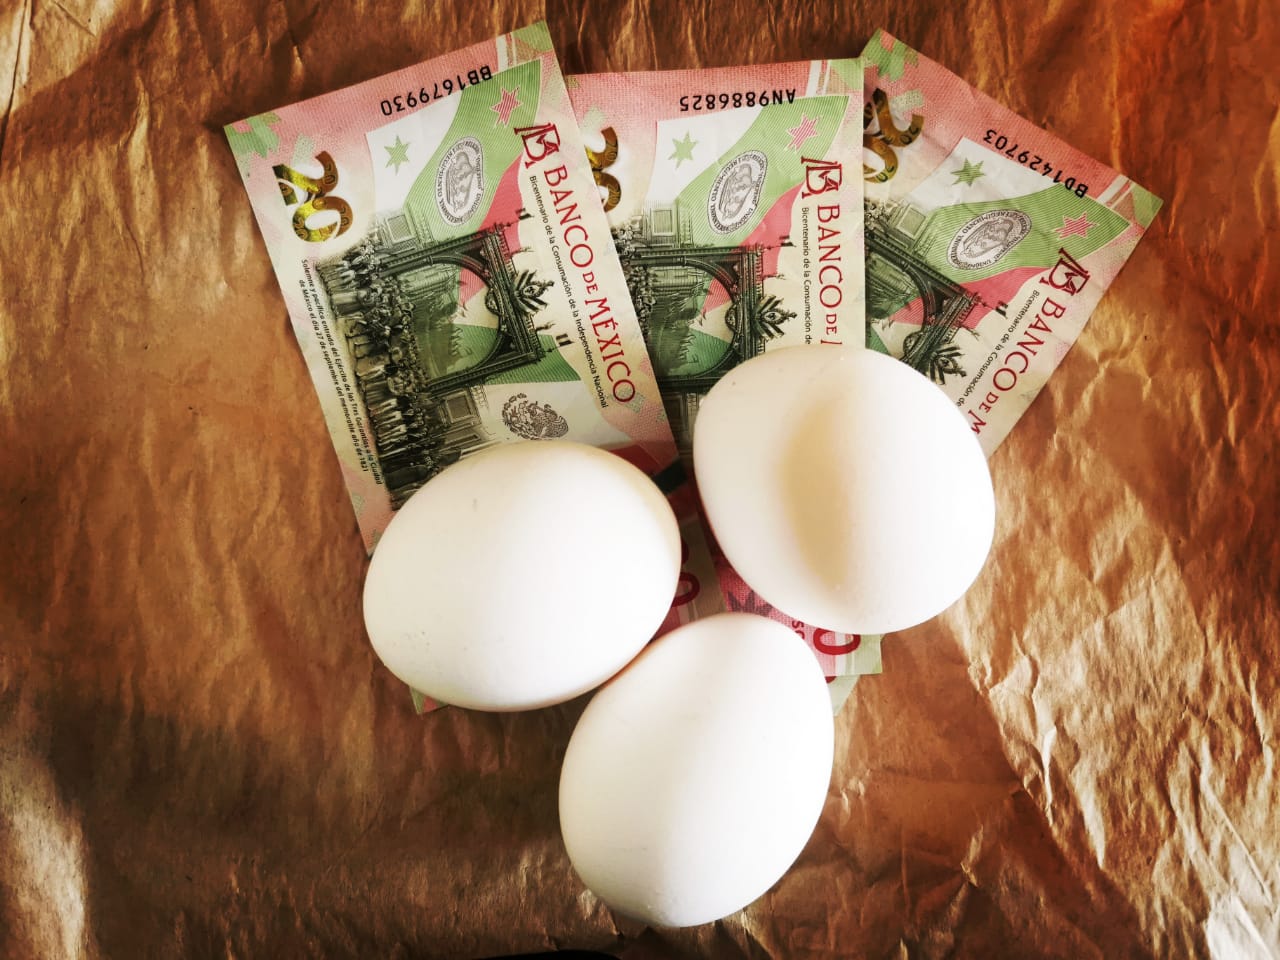 Hasta $54.00, precio del huevo en Michoacán; ¿por qué subió y cuándo bajará